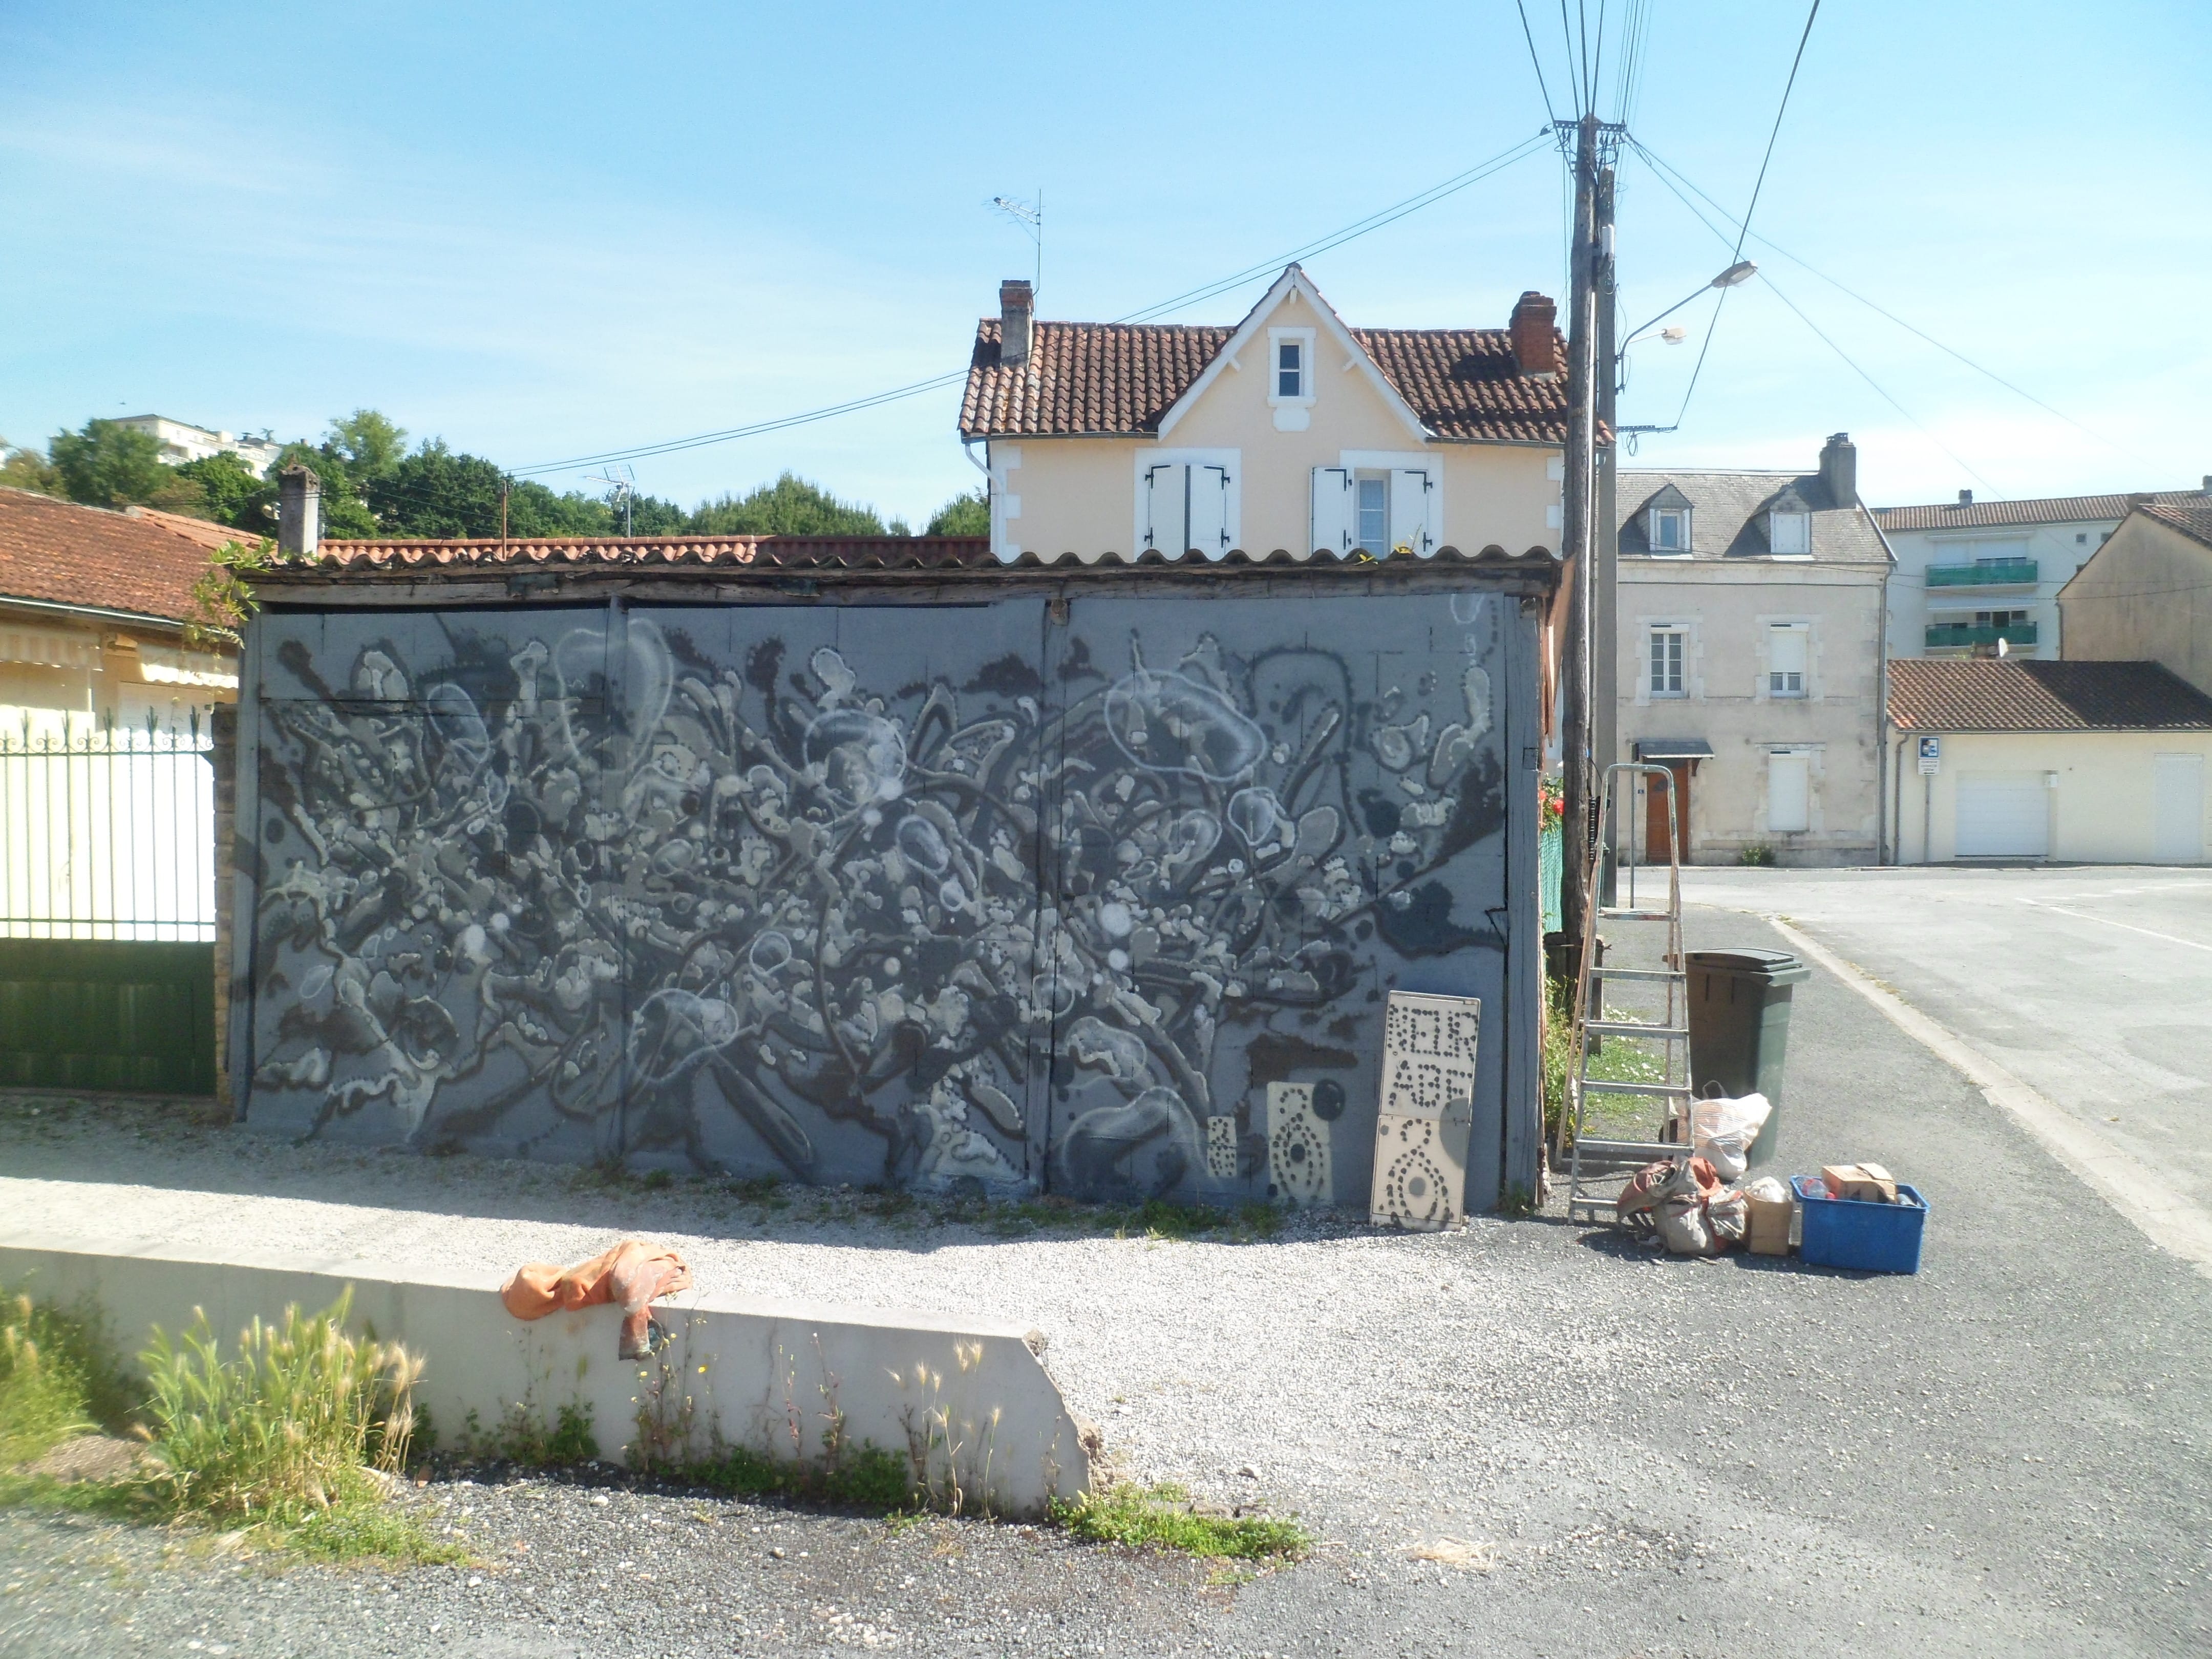 Graffiti 5661 #neurabf capturé par Neur Abf à Périgueux France